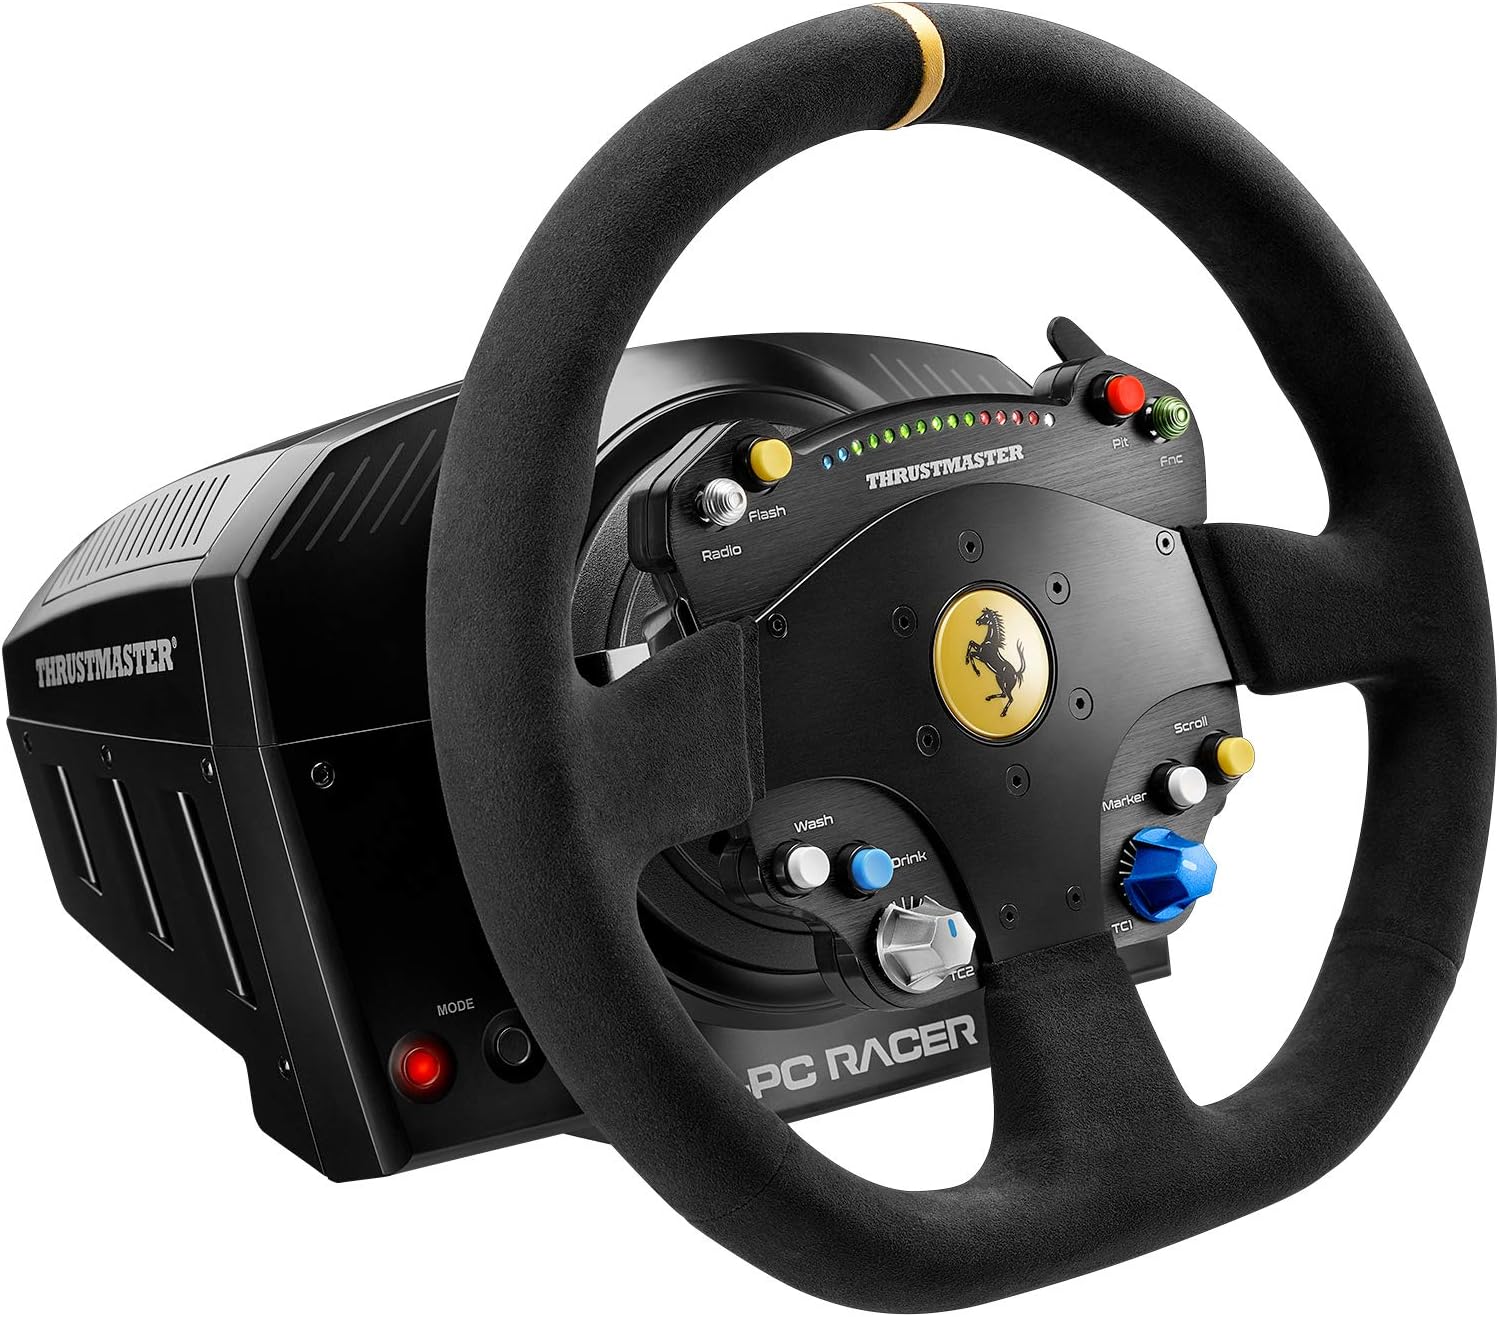 JOYPAD CONTROLEUR POUR SIMULATEURS DE CONDUITE, Thrustmaster TS-PC Racer Ferrari 488 Challenge Edition Volant PC Noir 